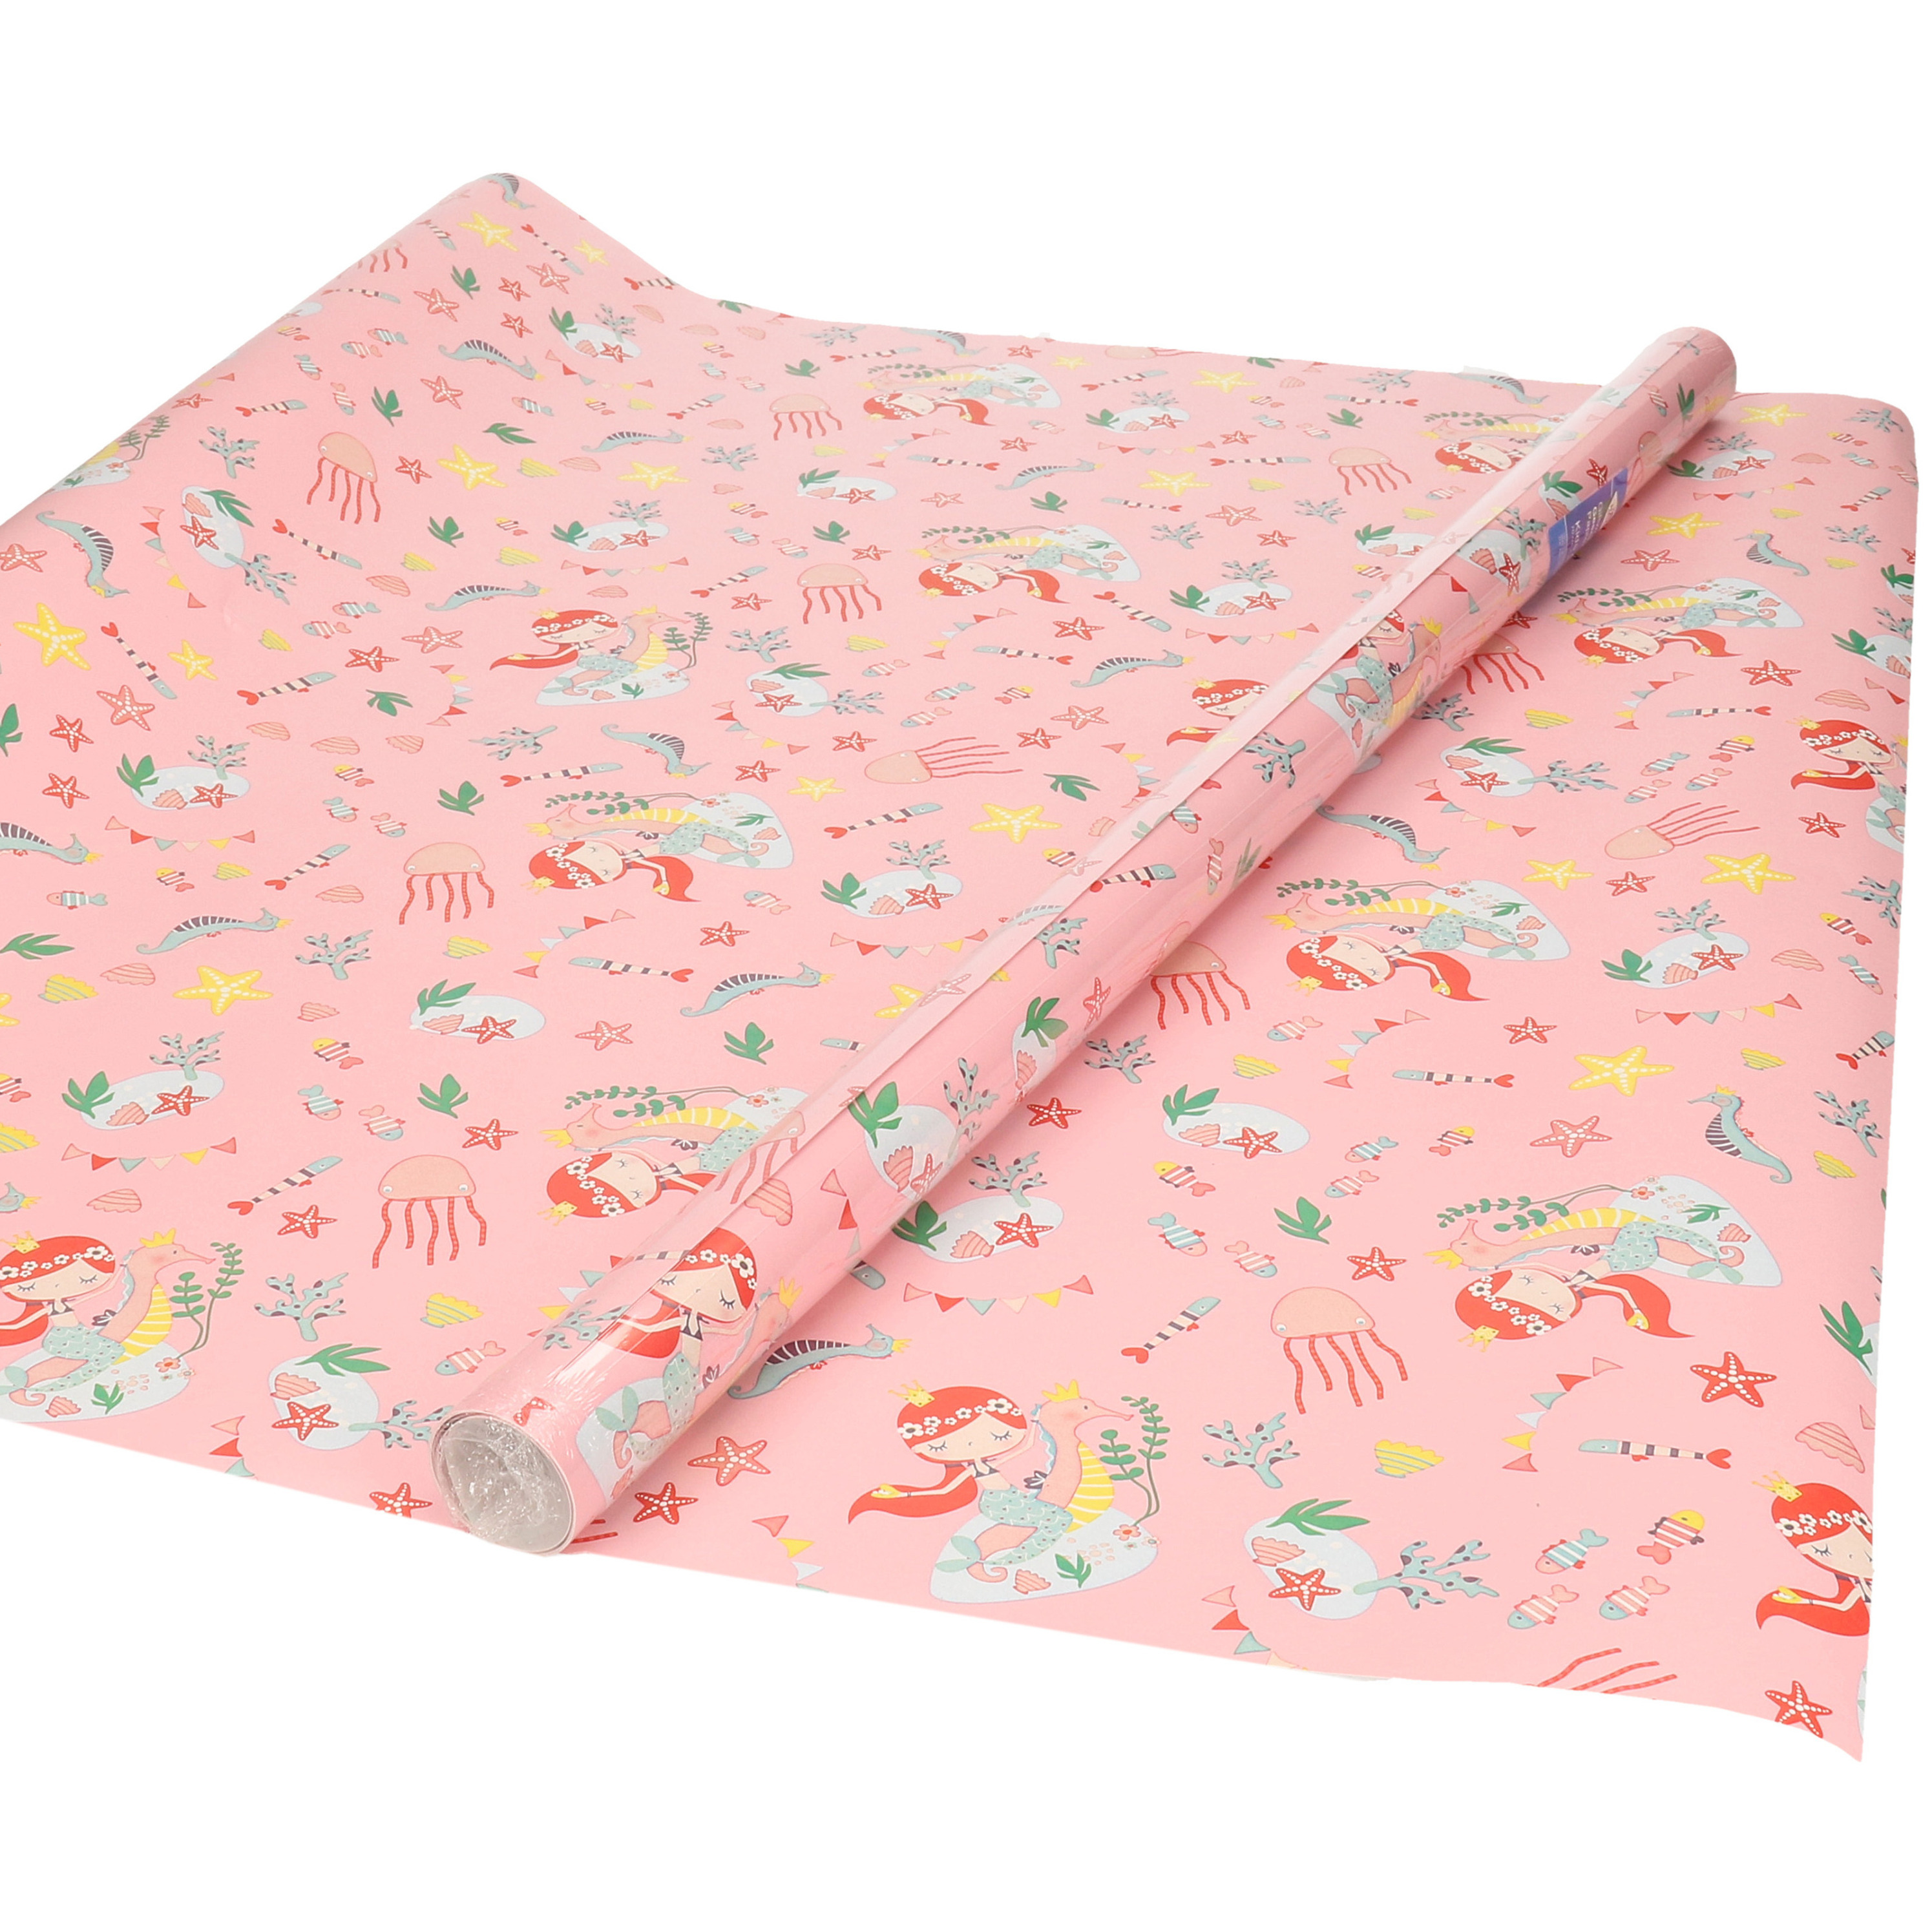 Inpakpapier/cadeaupapier roze met zeemeermin print 200 x 70 cm rol